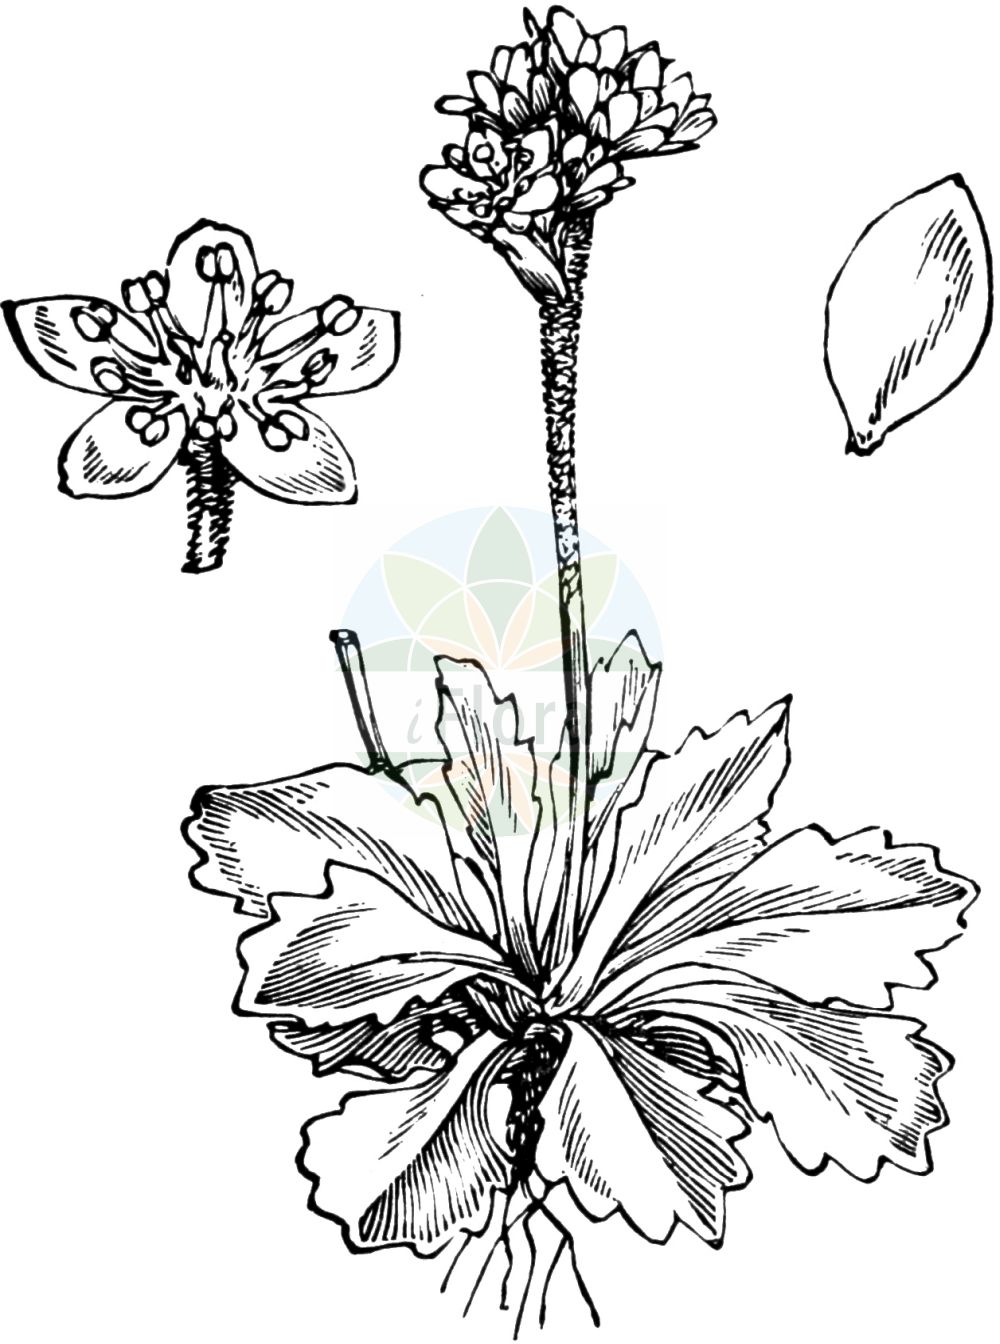 Historische Abbildung von Saxifraga nivalis (Alpine Saxifrage). Das Bild zeigt Blatt, Bluete, Frucht und Same. ---- Historical Drawing of Saxifraga nivalis (Alpine Saxifrage). The image is showing leaf, flower, fruit and seed.(Saxifraga nivalis,Alpine Saxifrage,Saxifraga nivalis,Saxifraga,Steinbrech,Saxifrage,Saxifragaceae,Steinbrechgewächse,Saxifrage family,Blatt,Bluete,Frucht,Same,leaf,flower,fruit,seed,Fitch et al. (1880))